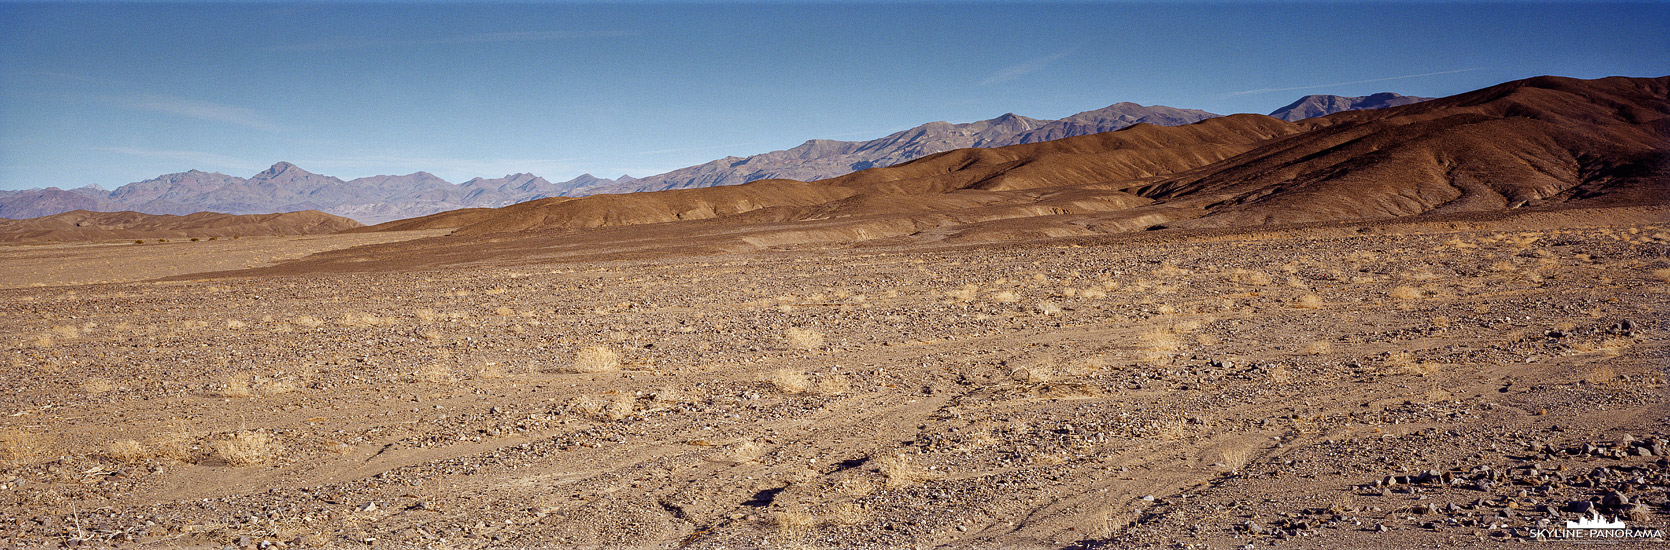 Die steinige und oft als lebensfeindlich bezeichnete, weite Landschaft des Death Valley, bietet für Fotografen spannende Perspektiven. In diesem Panorama, welches in der Ebene des Valleys entstanden ist, sind in der Ferne die umliegenden Höhenzüge der Grapevine Mountains zu sehen.